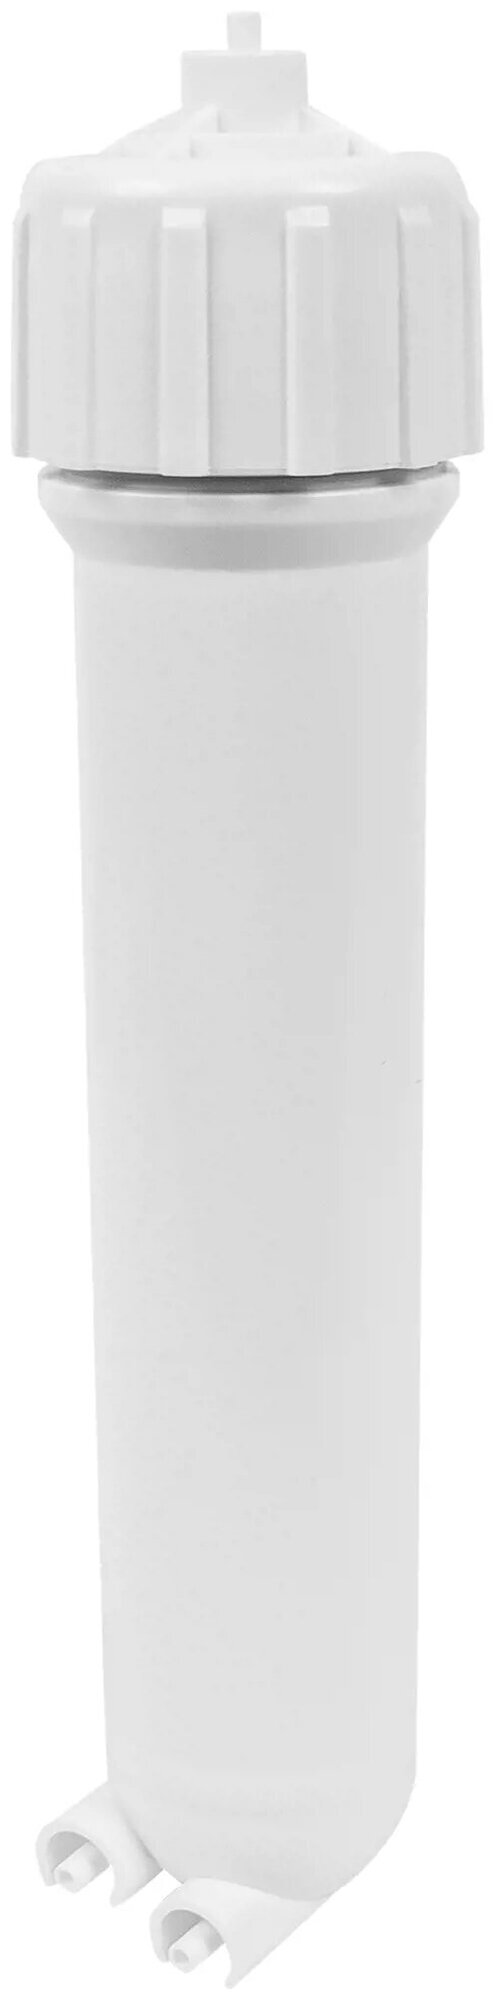 Универсальный корпус для обратноосмотической мембраны фильтра для воды UFAFILTER 1812 (Без фитингов)